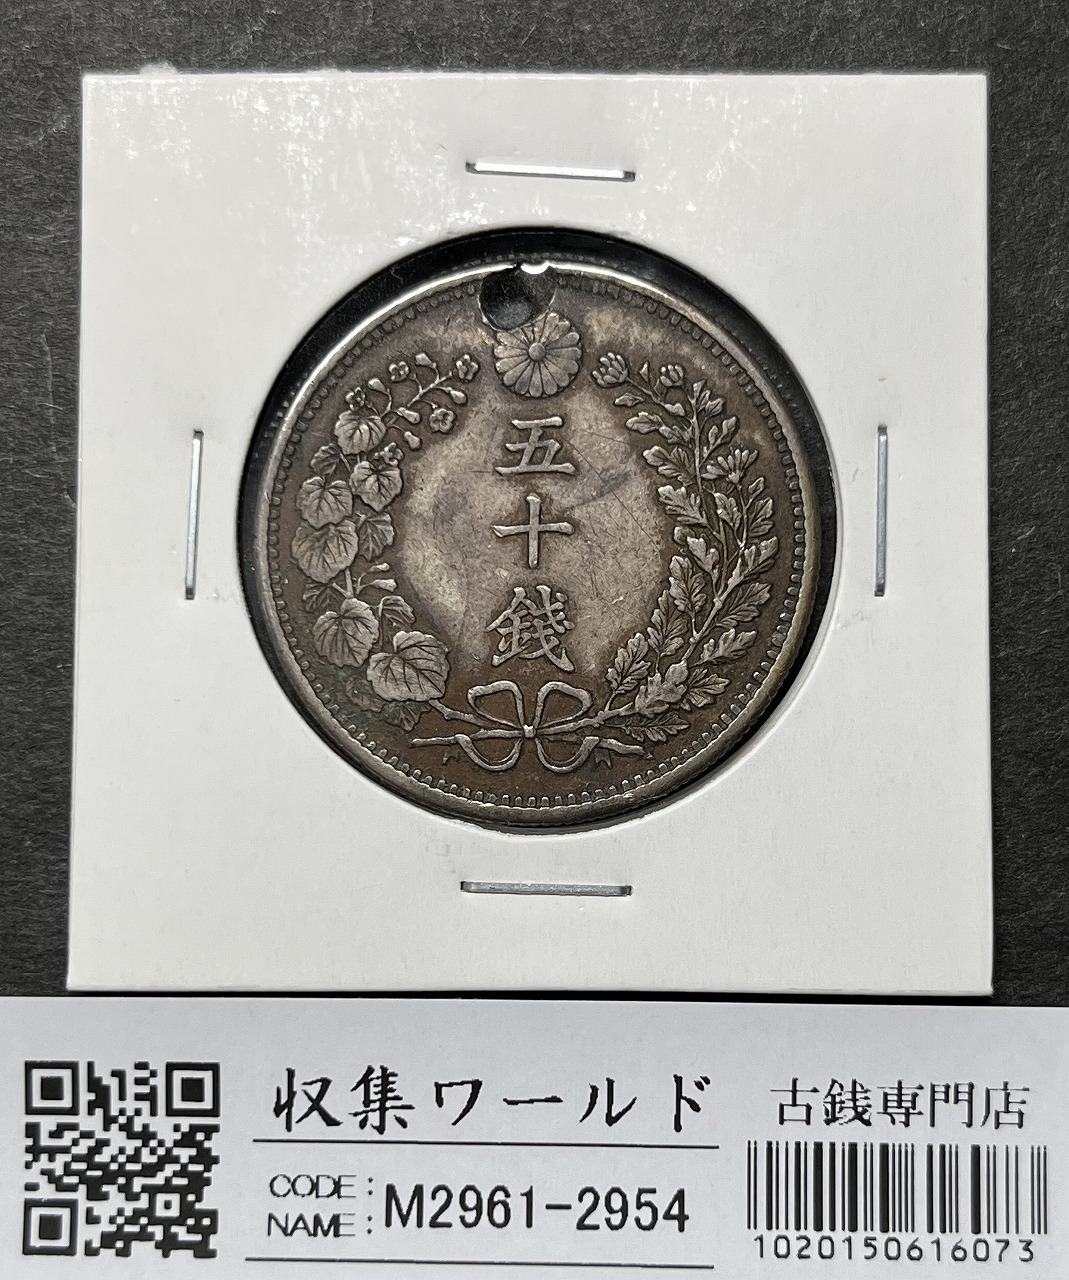 竜50銭銀貨 上切 明治31年銘(1898年) 近代銀貨 竜五十銭 流通品